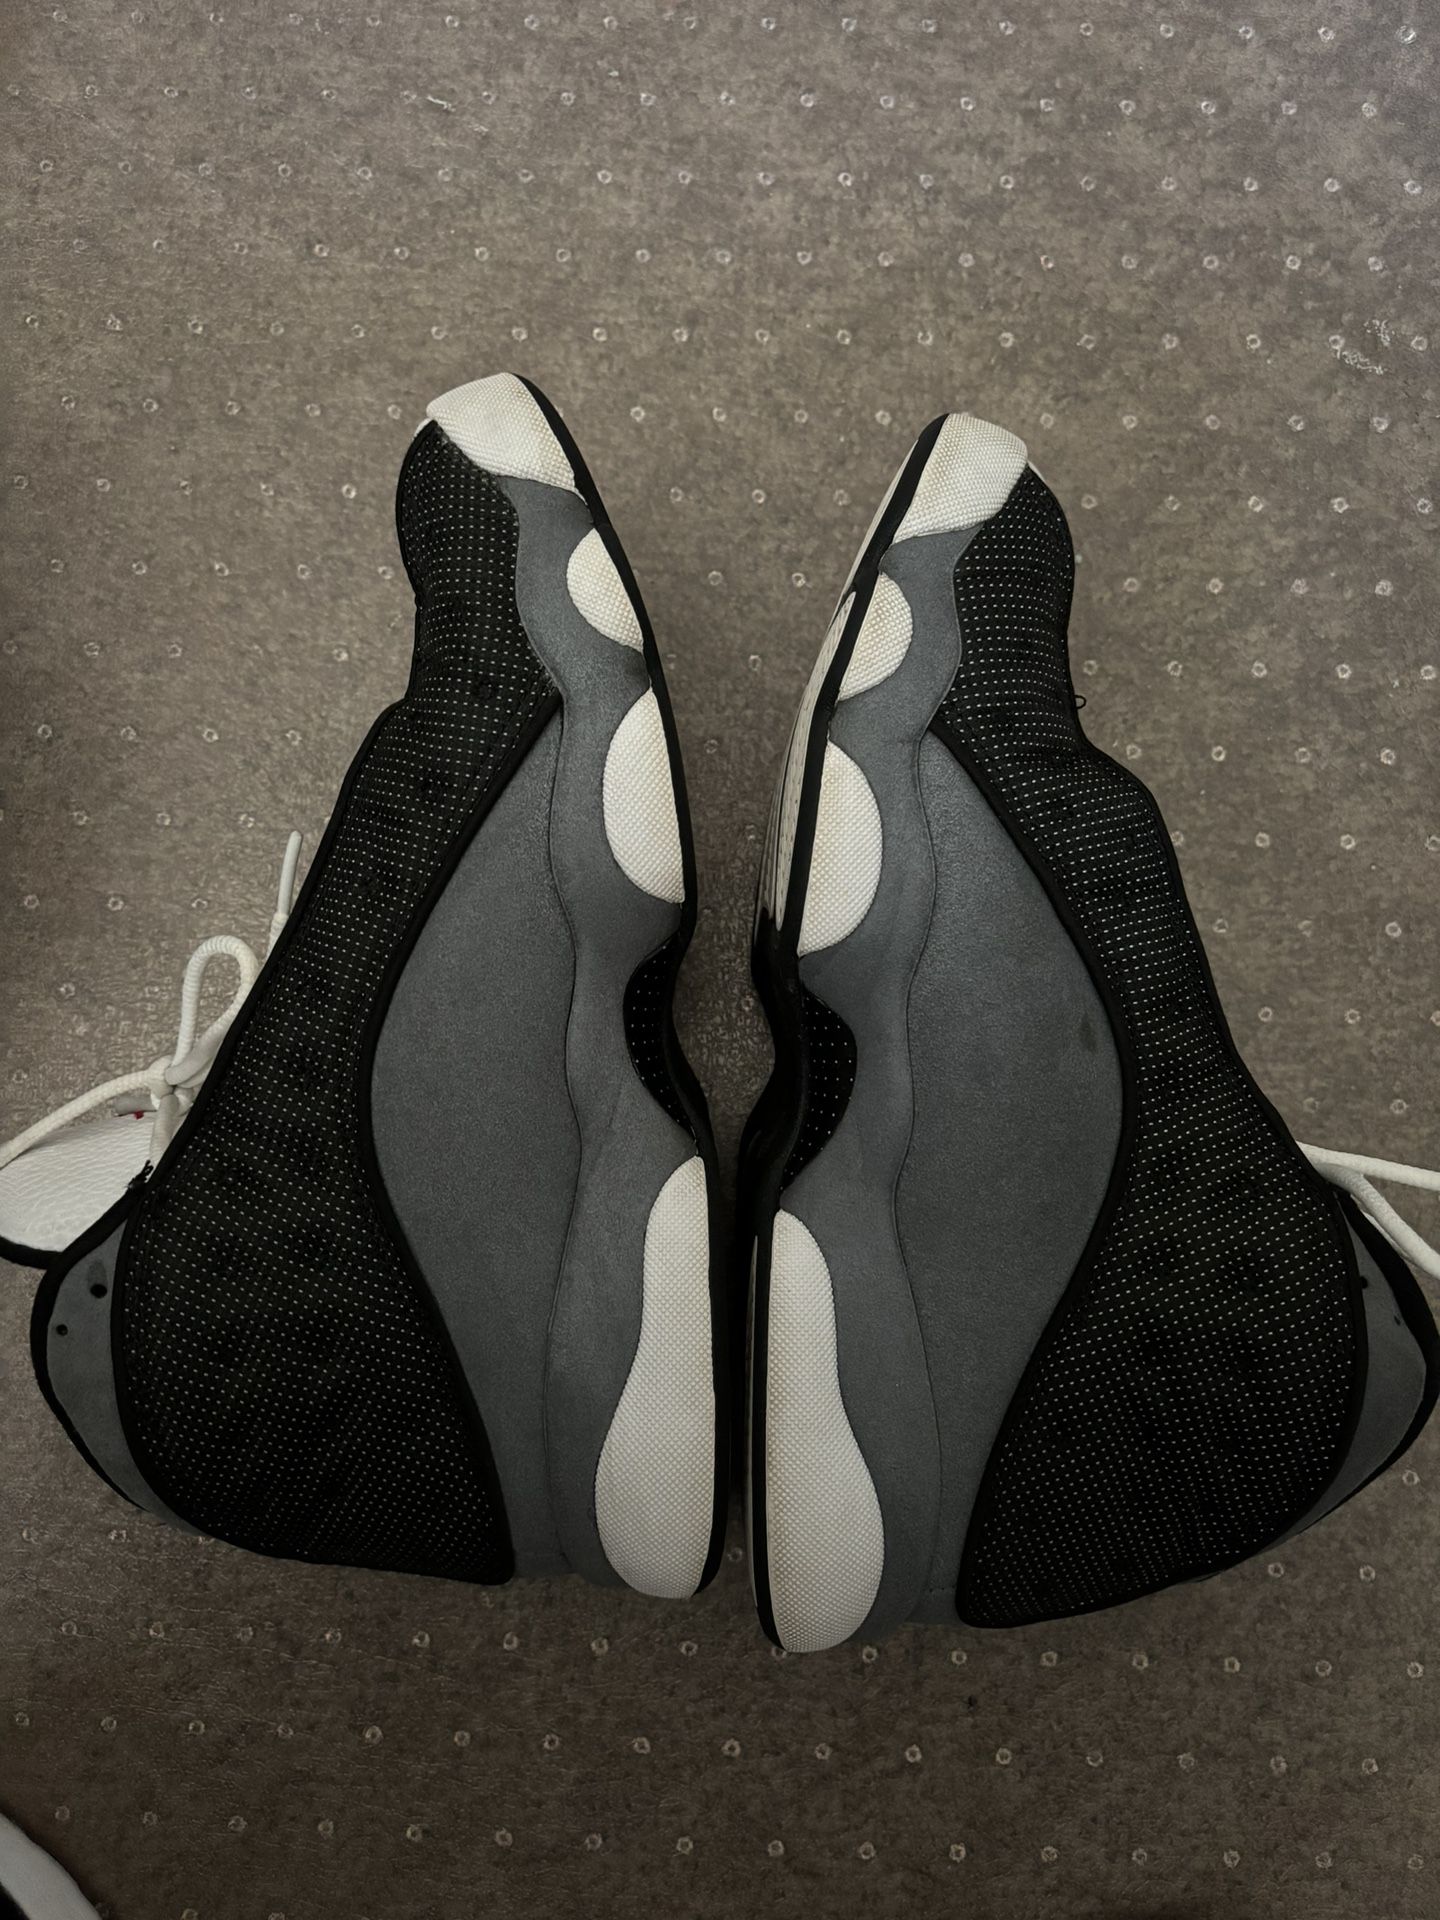 Nike Air Jordan Retro 13 Black Flint Grey, Size 9.5